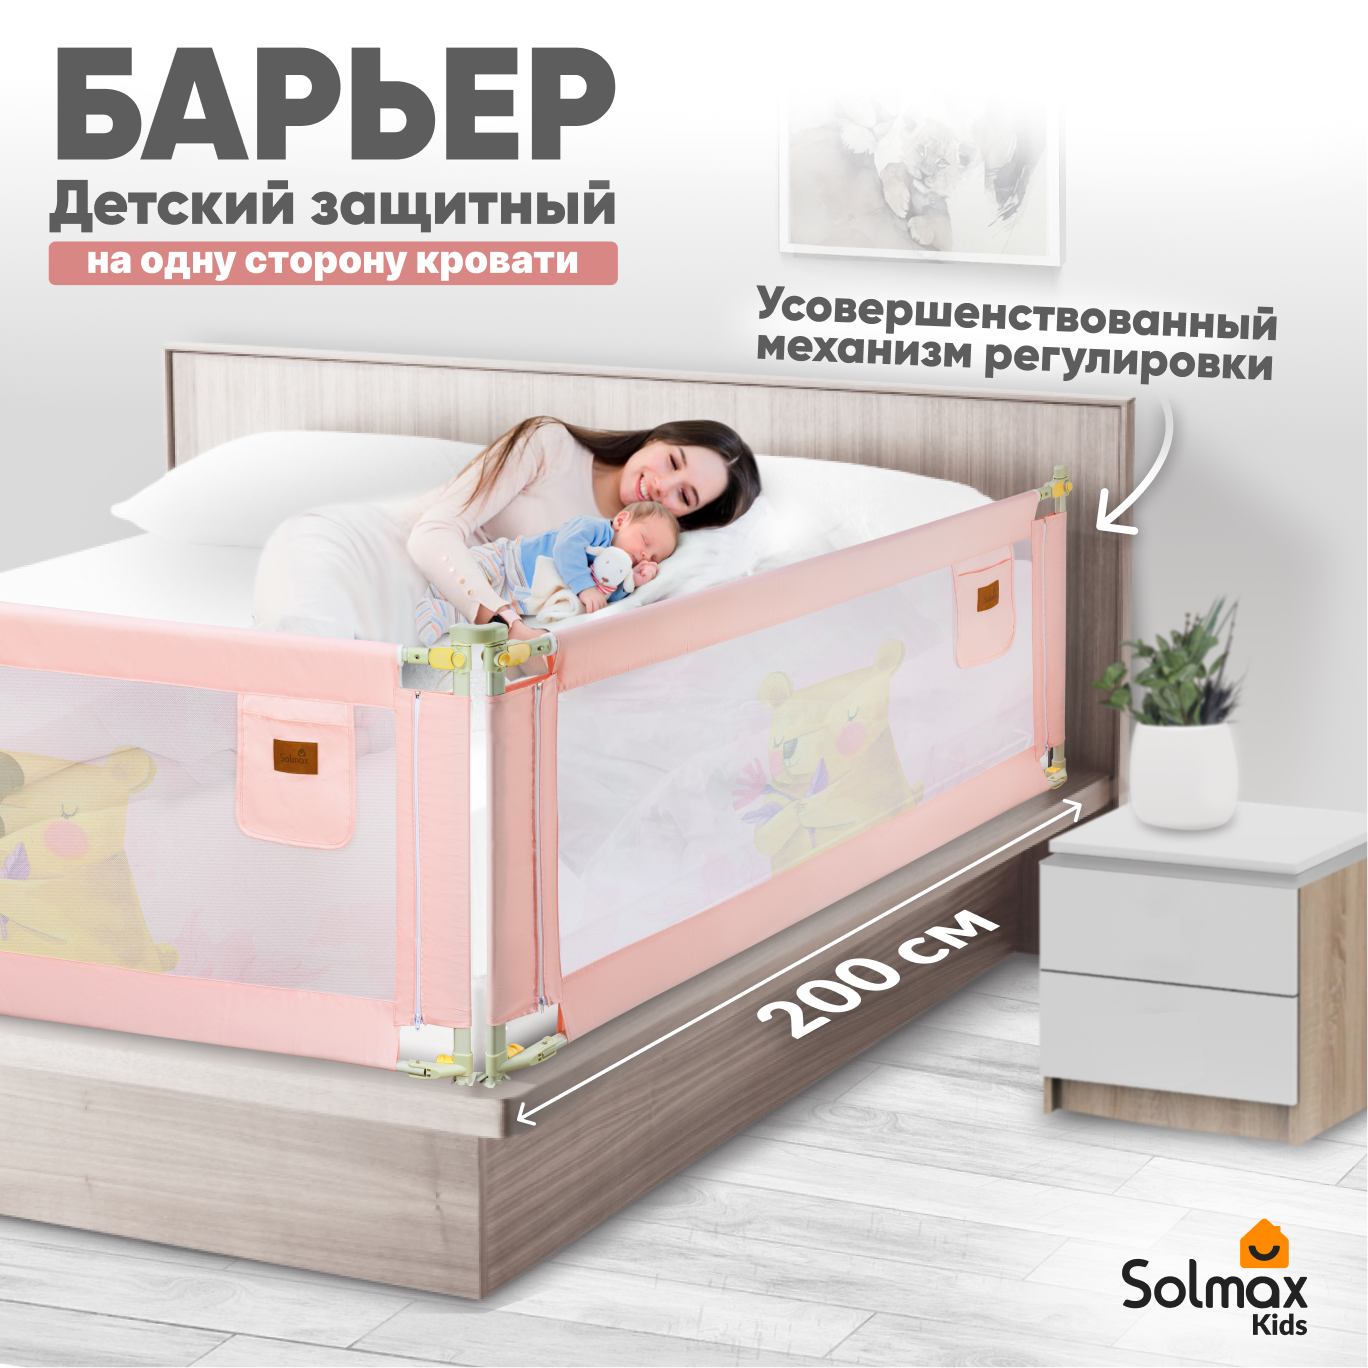 Барьер защитный для кровати от падений, бортик в кроватку для малыша 200 см SOLMAX, розовый